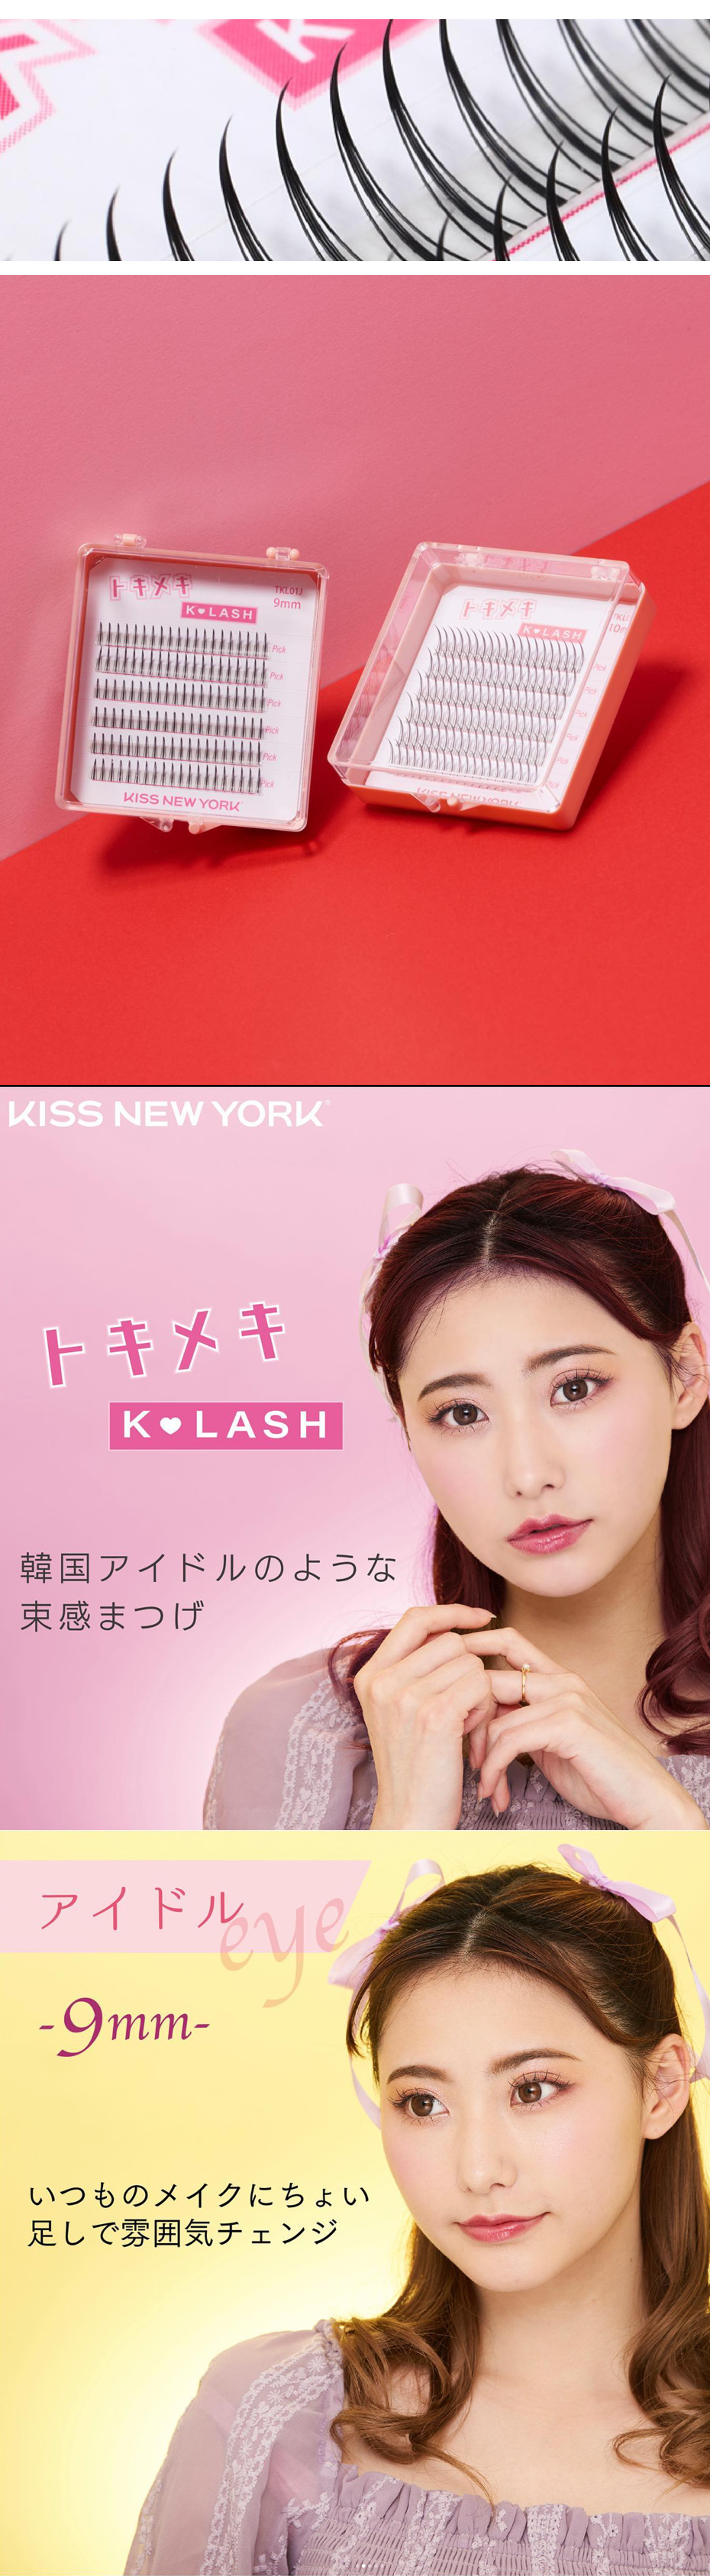 KISS NEW YORK キスニューヨーク トキメキK-LASH まるで自分のまつげ